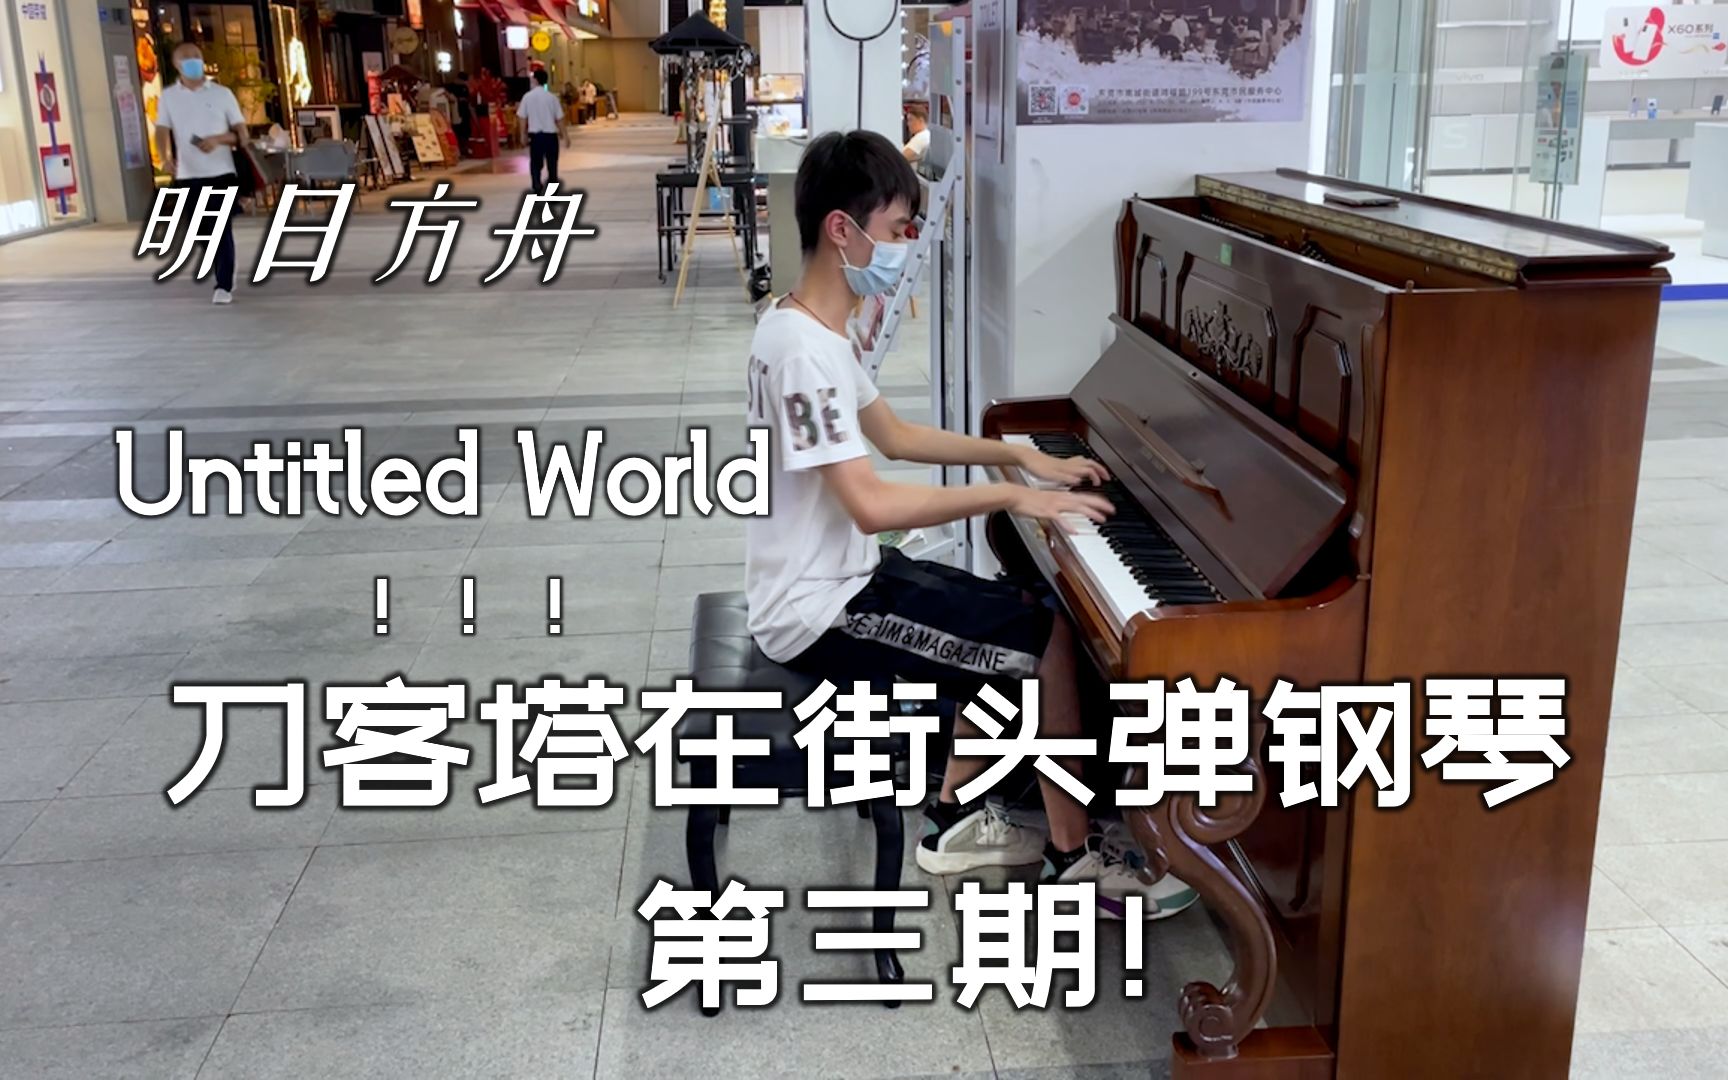 大家还记得当年明日方舟一周年嘛？Untitled World 街头钢琴翻弹完整版！